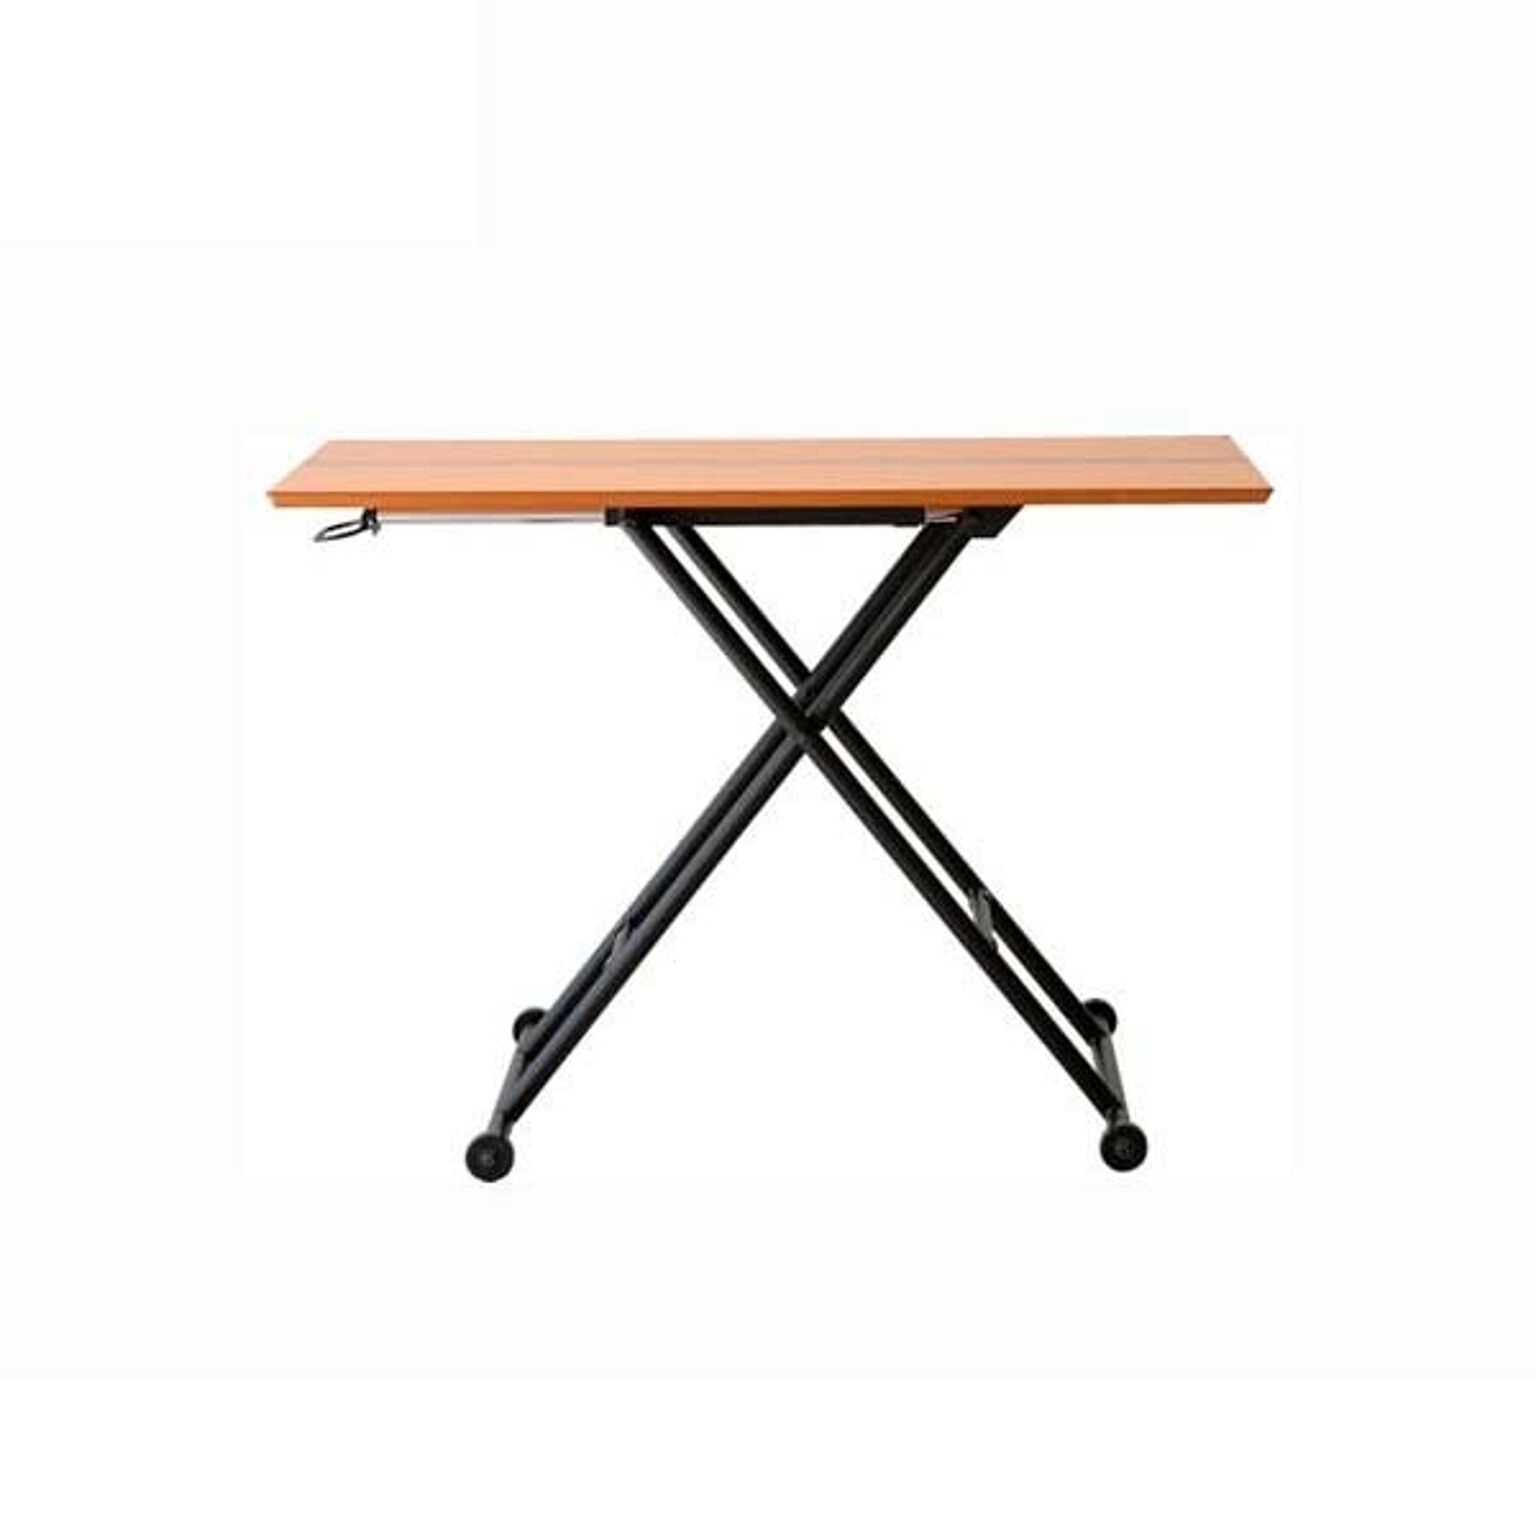 昇降テーブル ナチュラル色 幅113 高さ11-70 長方形テーブル 天然木 オーク 無段階高さ調節 スチール 高さ可変テーブル ナチュラル ロジカ RLT4516 北欧テイスト